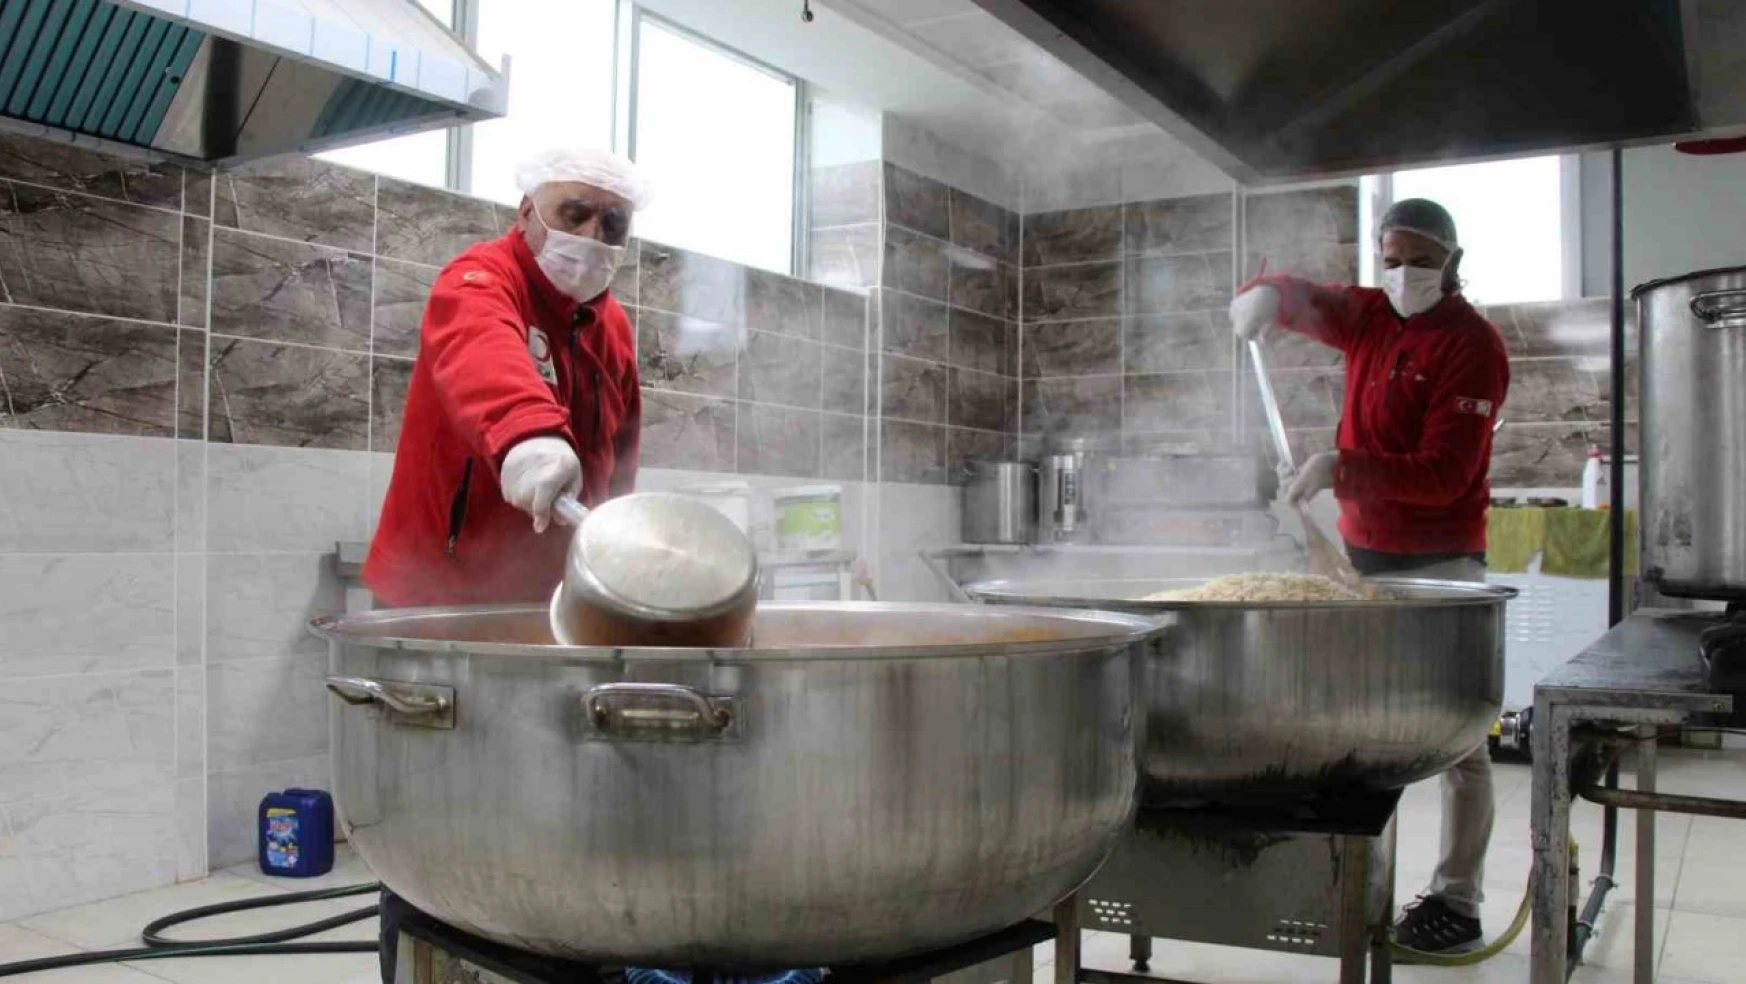 Bingöl'de Türk Kızılayı, Ramazan ayında ihtiyaç sahipleri için sıcak yemekler pişiriyor